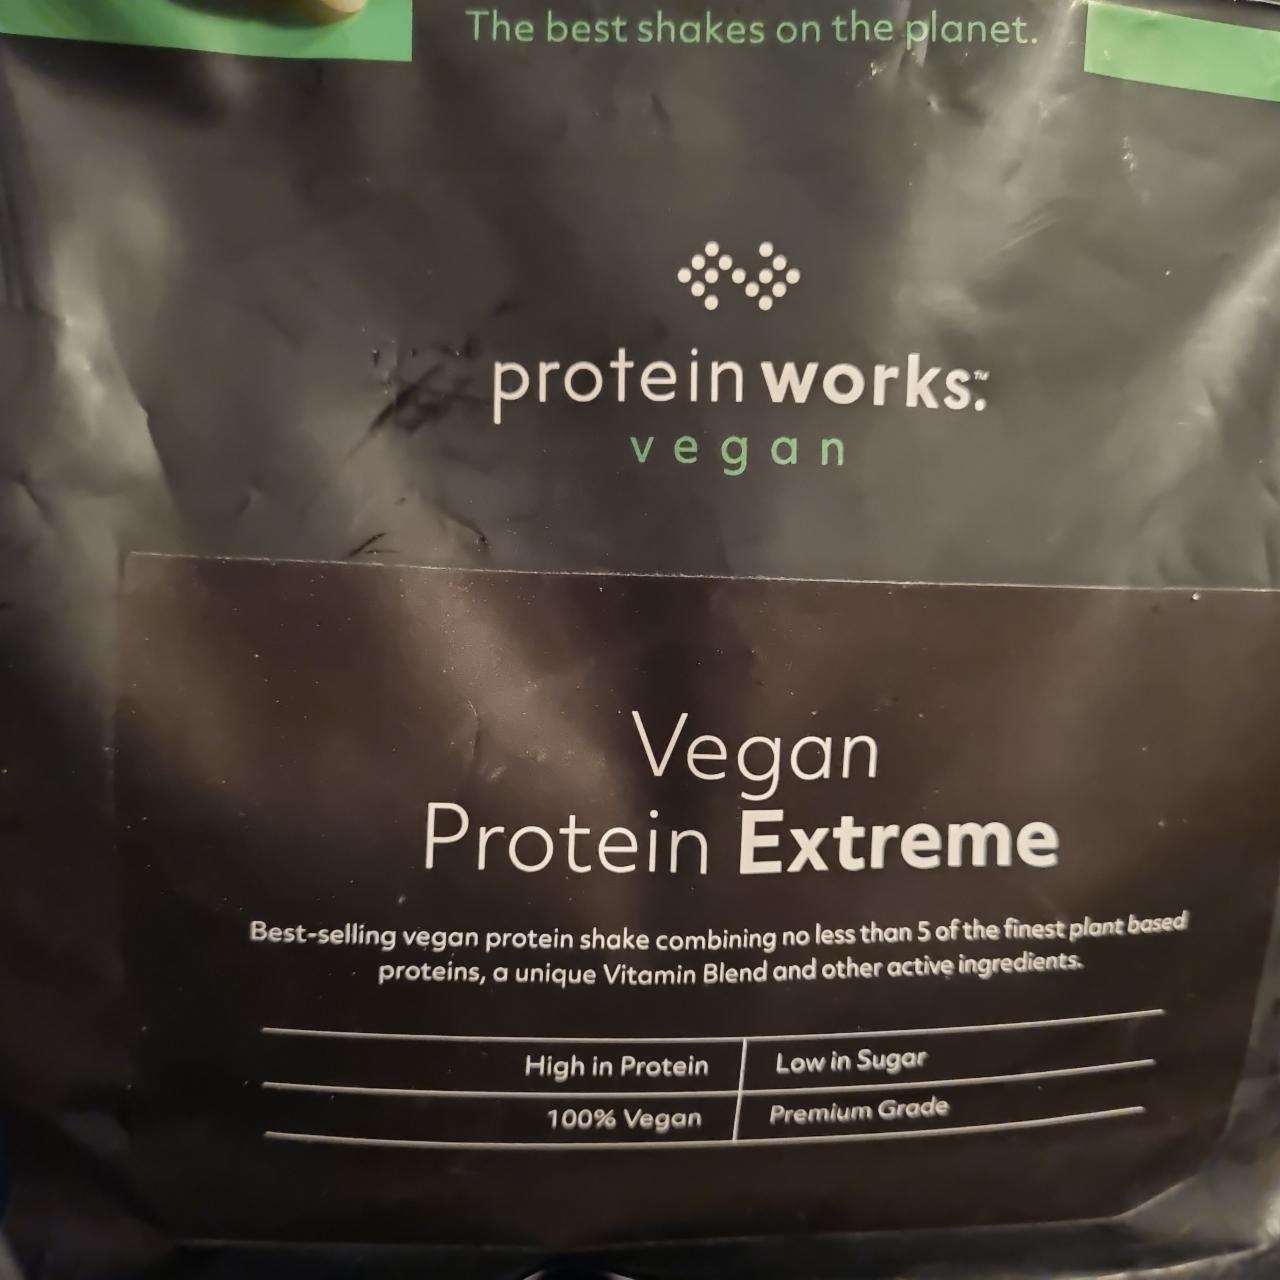 Fotografie - Vegan Protein Extreme Vanilla Cream Protein Works